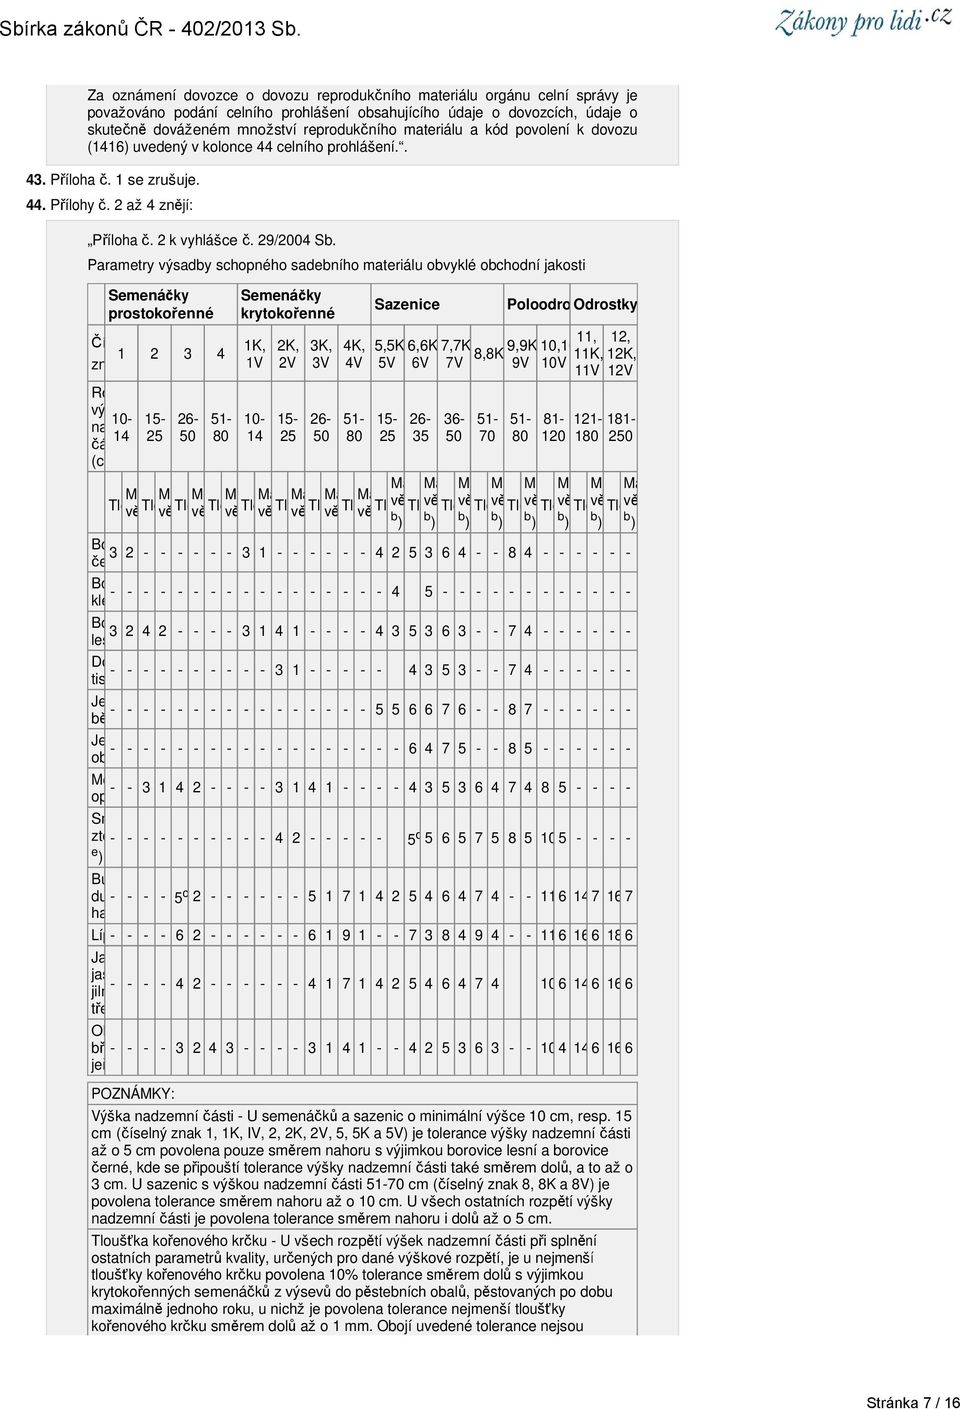 Parametry výsadby schopného sadebního materiálu obvyklé obchodní jakosti Semenáčky prostokořenné Číselný znak 1 2 3 4 1K, 1V Rozp vý 10-15- nadzemní 14 25 části (cm) 26-50 51-80 Semenáčky